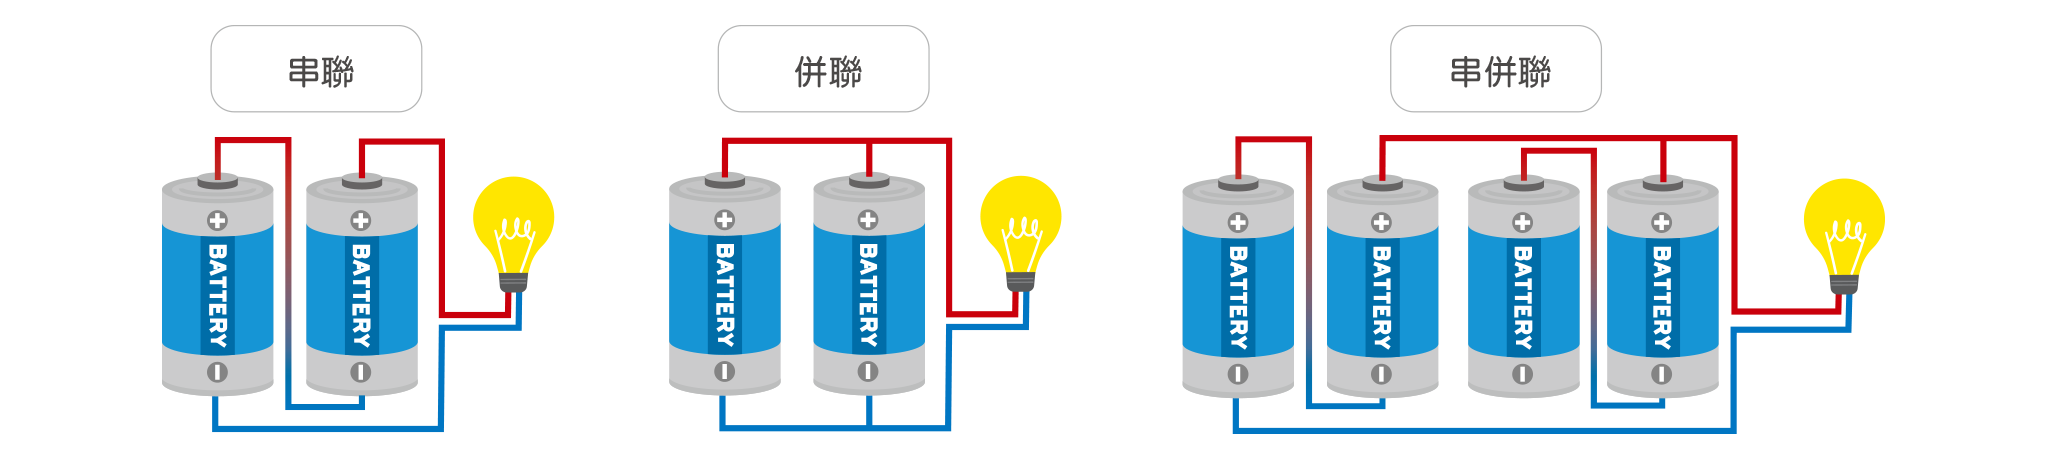 電池的接線方式一般有三種方式：分別為串聯、並聯及串並聯。接線示意圖分別如下：電池尺寸及個數取決於所要求的蓄電容量、充電電流、最大負載電流以及最小溫度等，一般建議取用最嚴格的條件來設計這些電池。溫度對於電池蓄電容量有顯著影響，在40°F時能保存75%的額定容量，在0°F將只剩下50%。蓄電容量通常以安培－小時(Amp-Hours, A-H)表示。